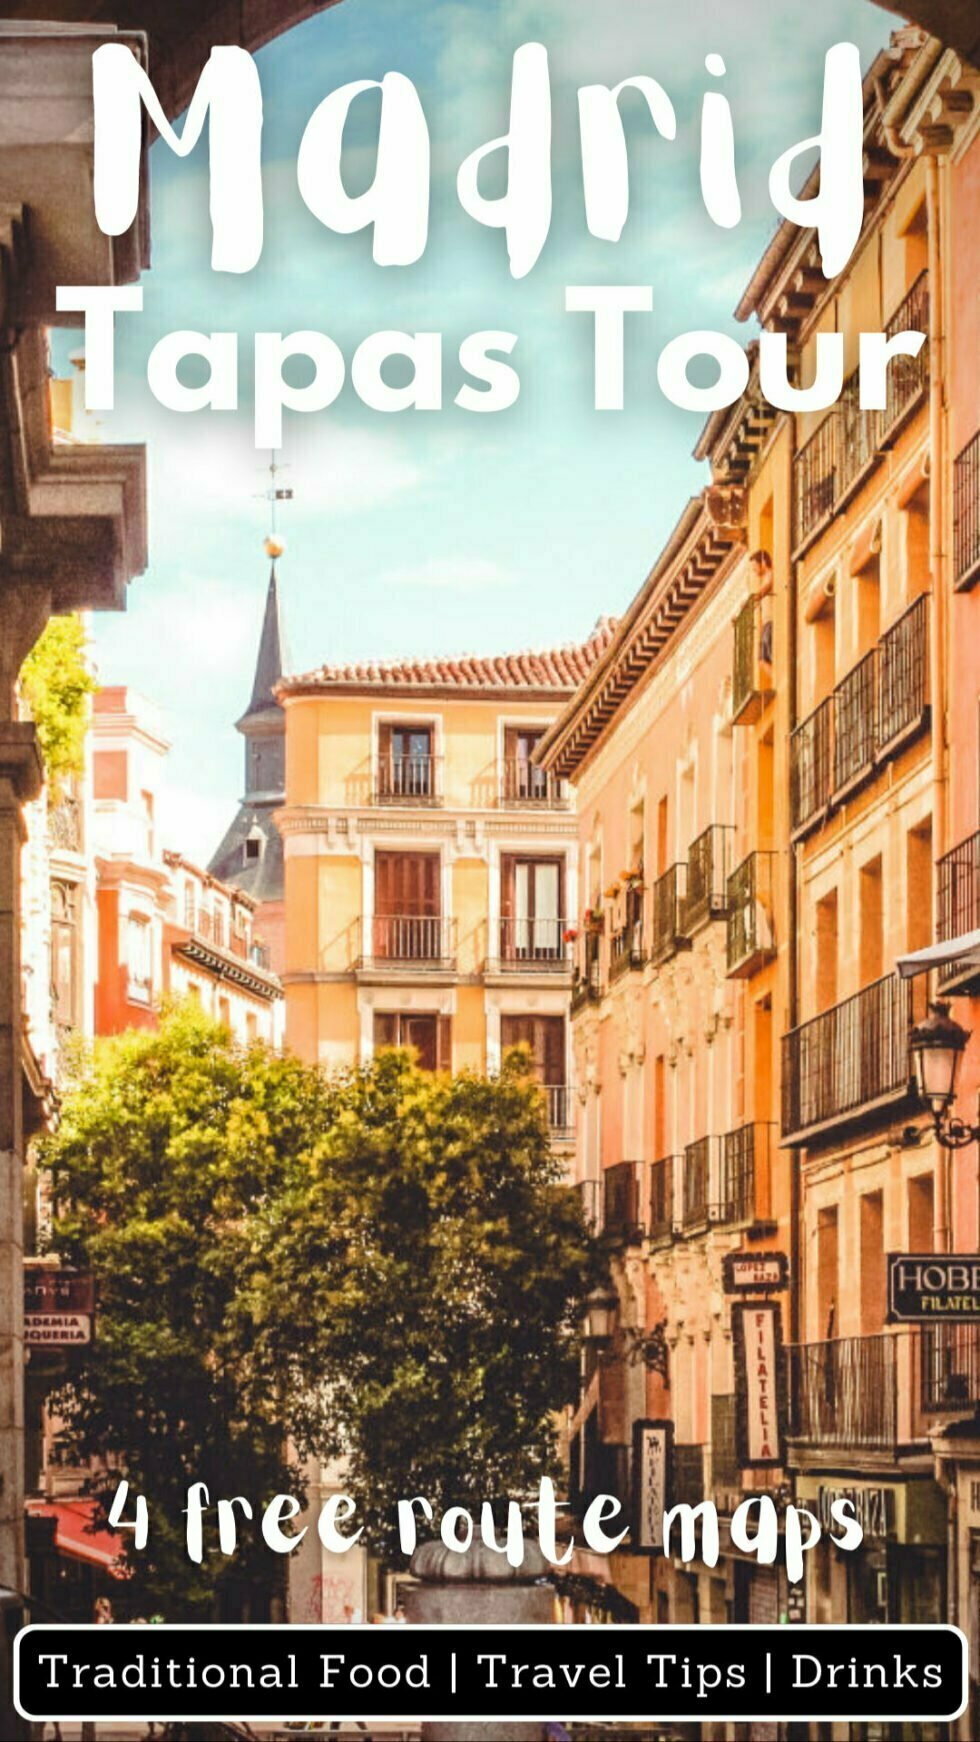 Madrid Tapas Walking Tour (with 4 free route maps!)